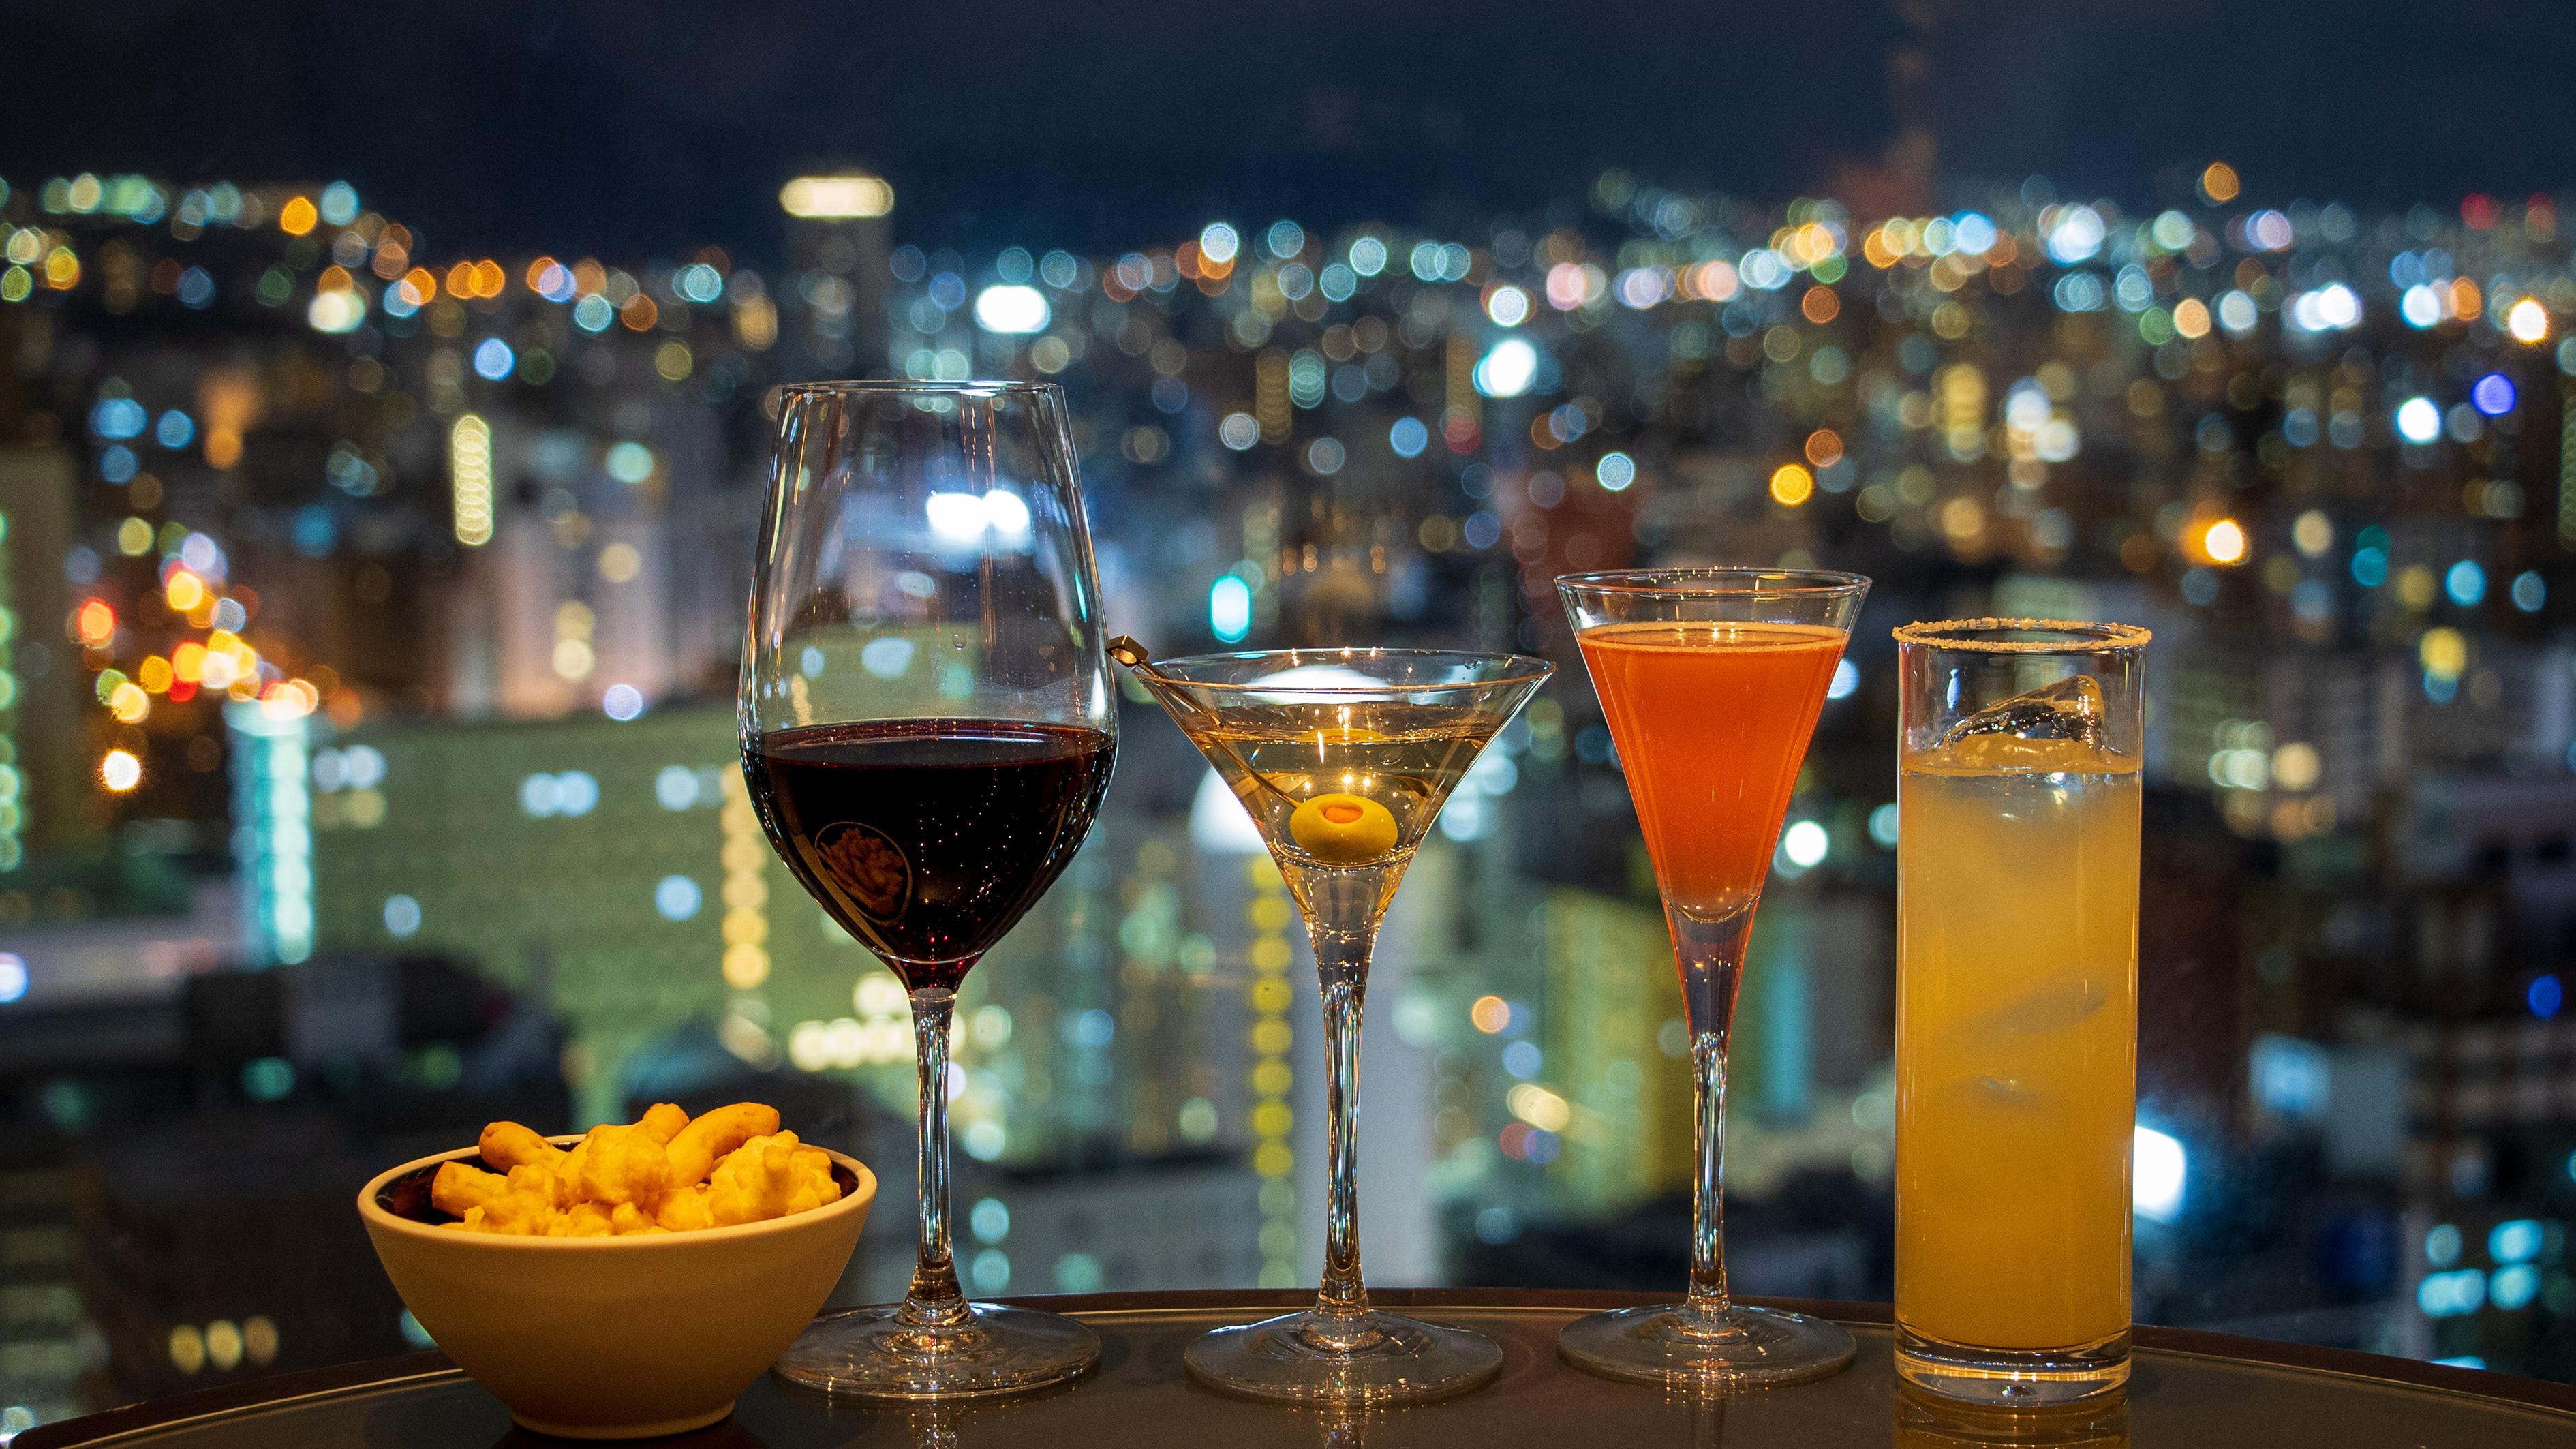 ご宿泊者さま限定のナイトキャップセットもご用意。日本新三大夜景都市札幌の夜景を眼下に、おやすみ前の上質なひとときをお過ごしください。